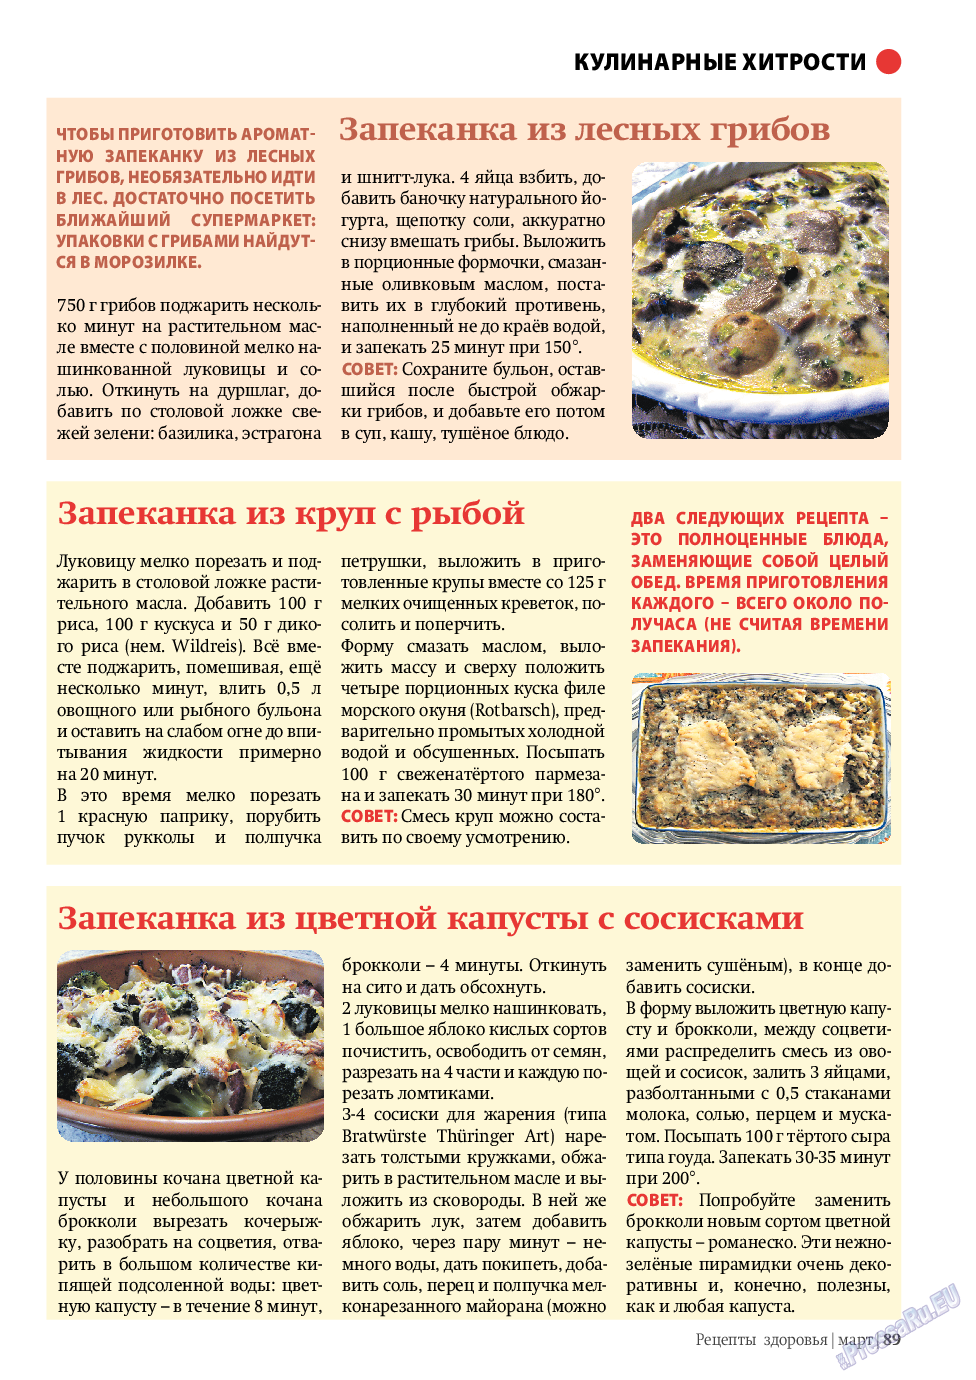 Рецепты здоровья, журнал. 2010 №3 стр.89